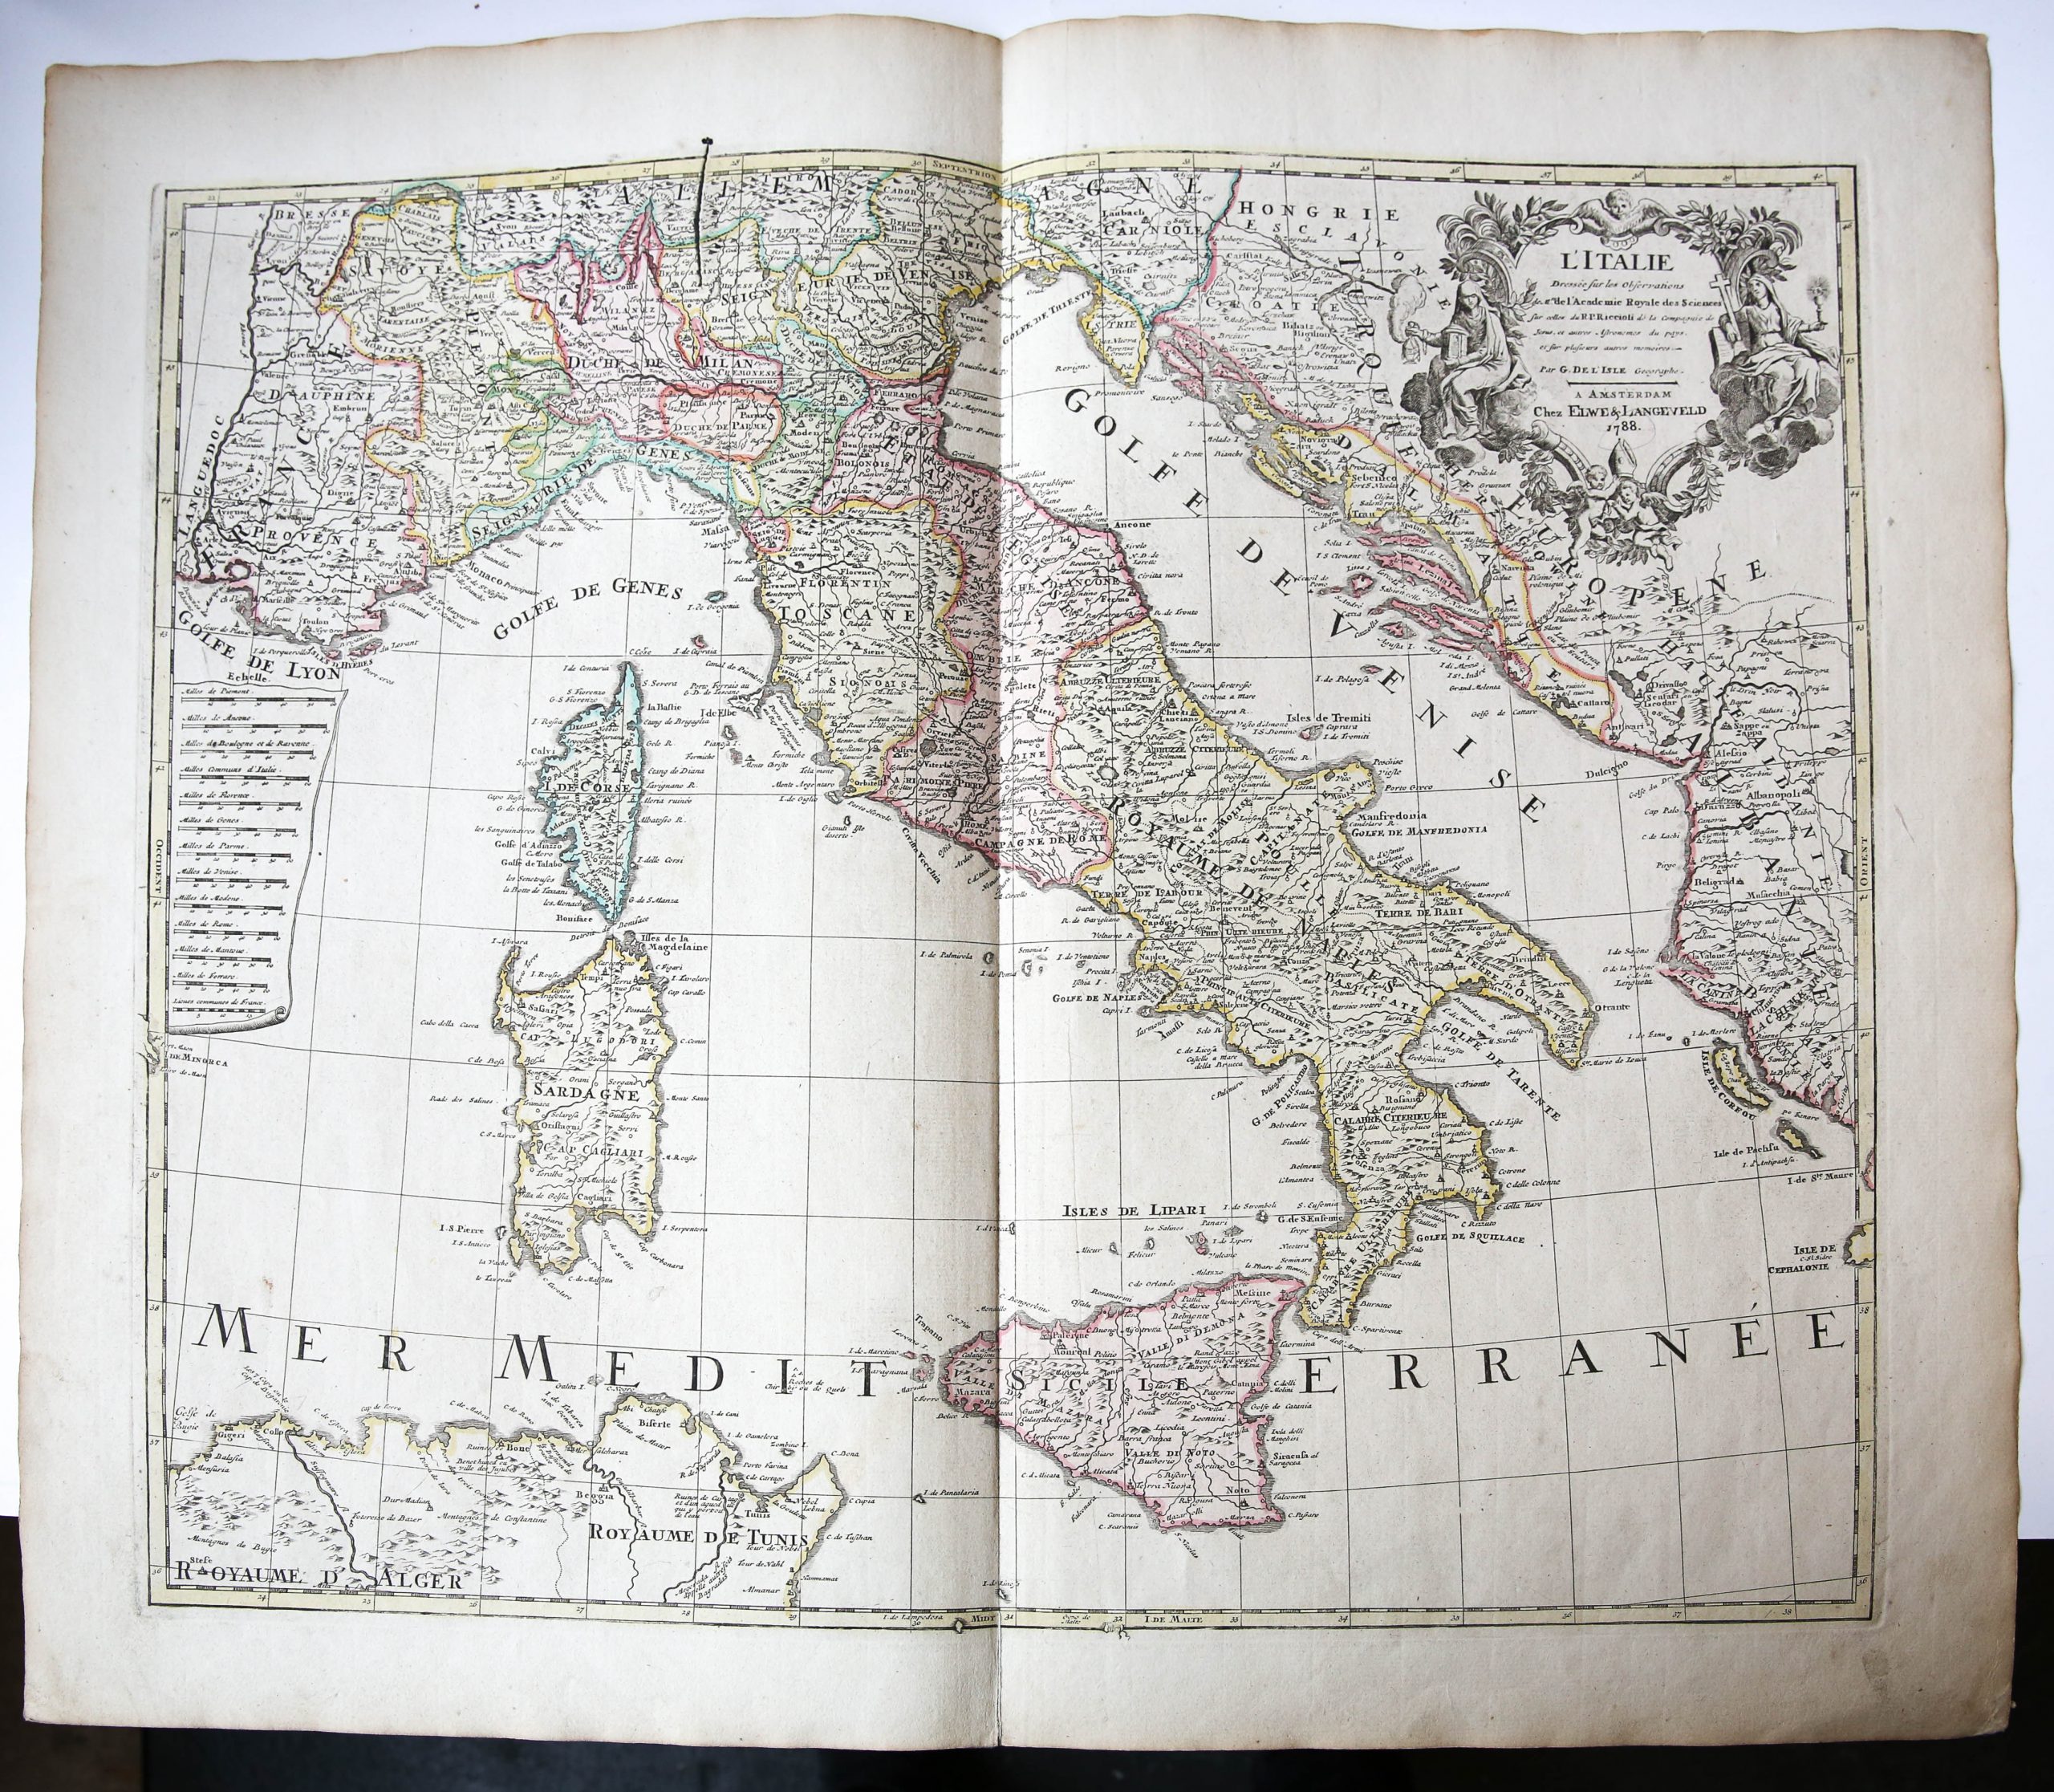 [Hand colored etching and engraving/handgekleurde ets en gravure kaart van Italië] L'ITALIE (map of Italy).